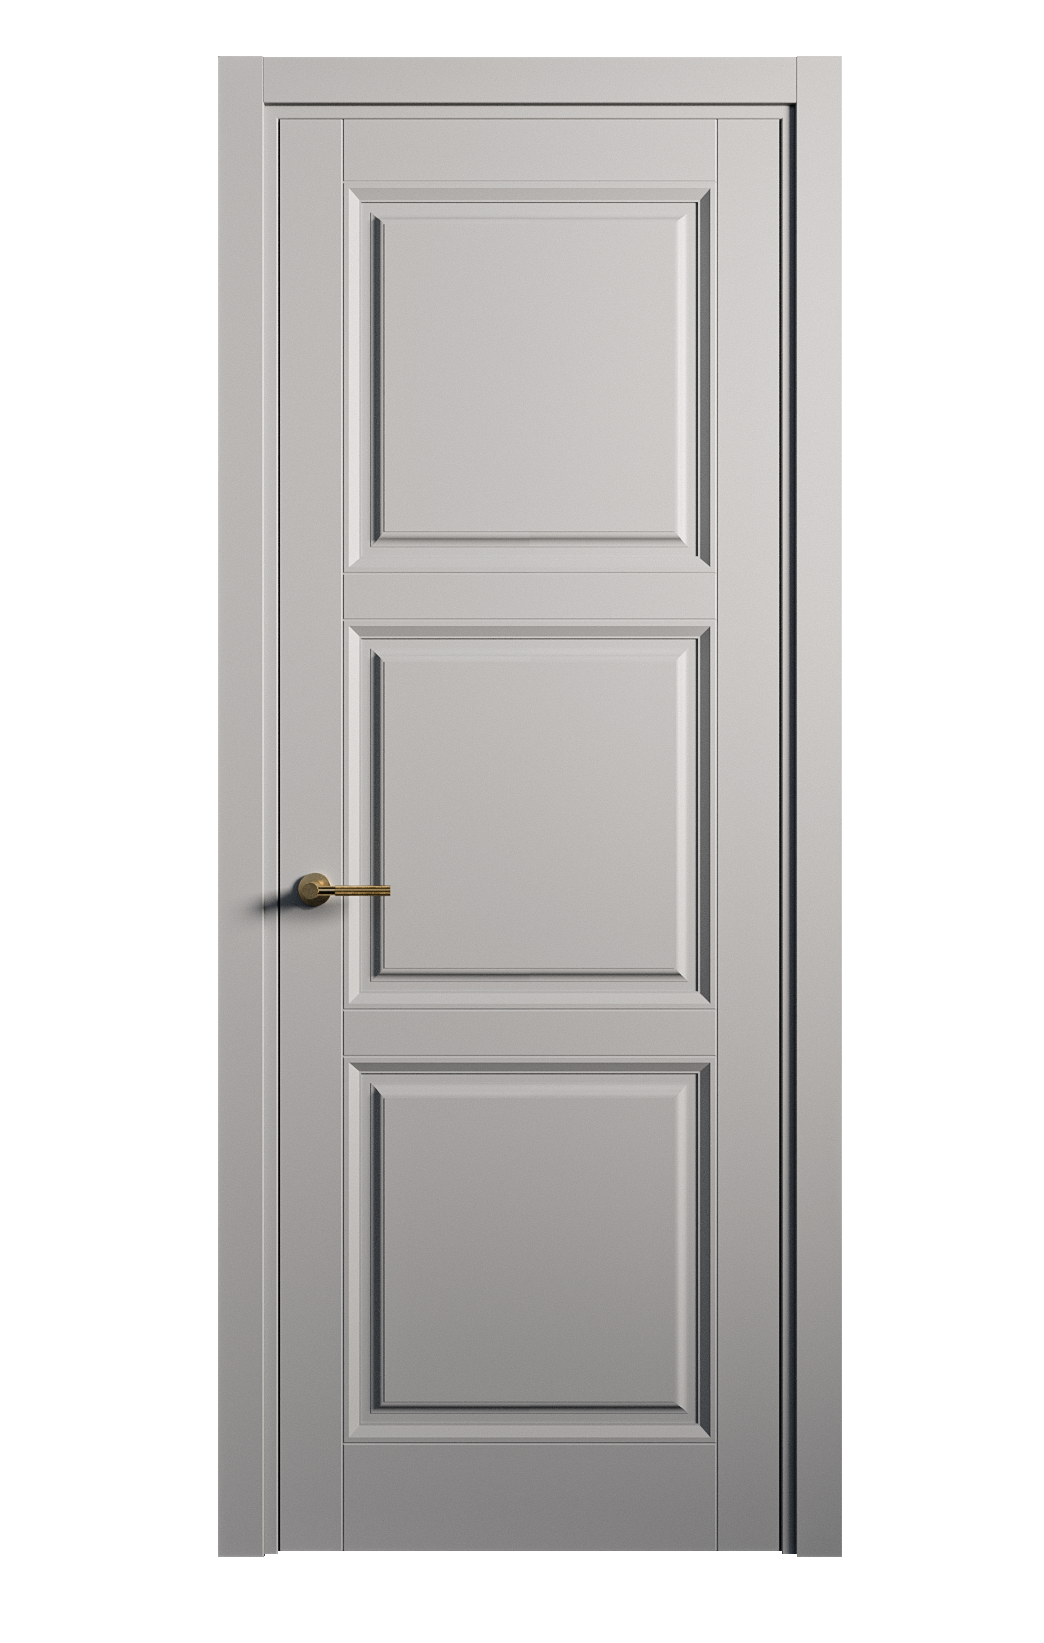 Межкомнатная дверь Venezia-3 глухая эмаль ral 7040 25725